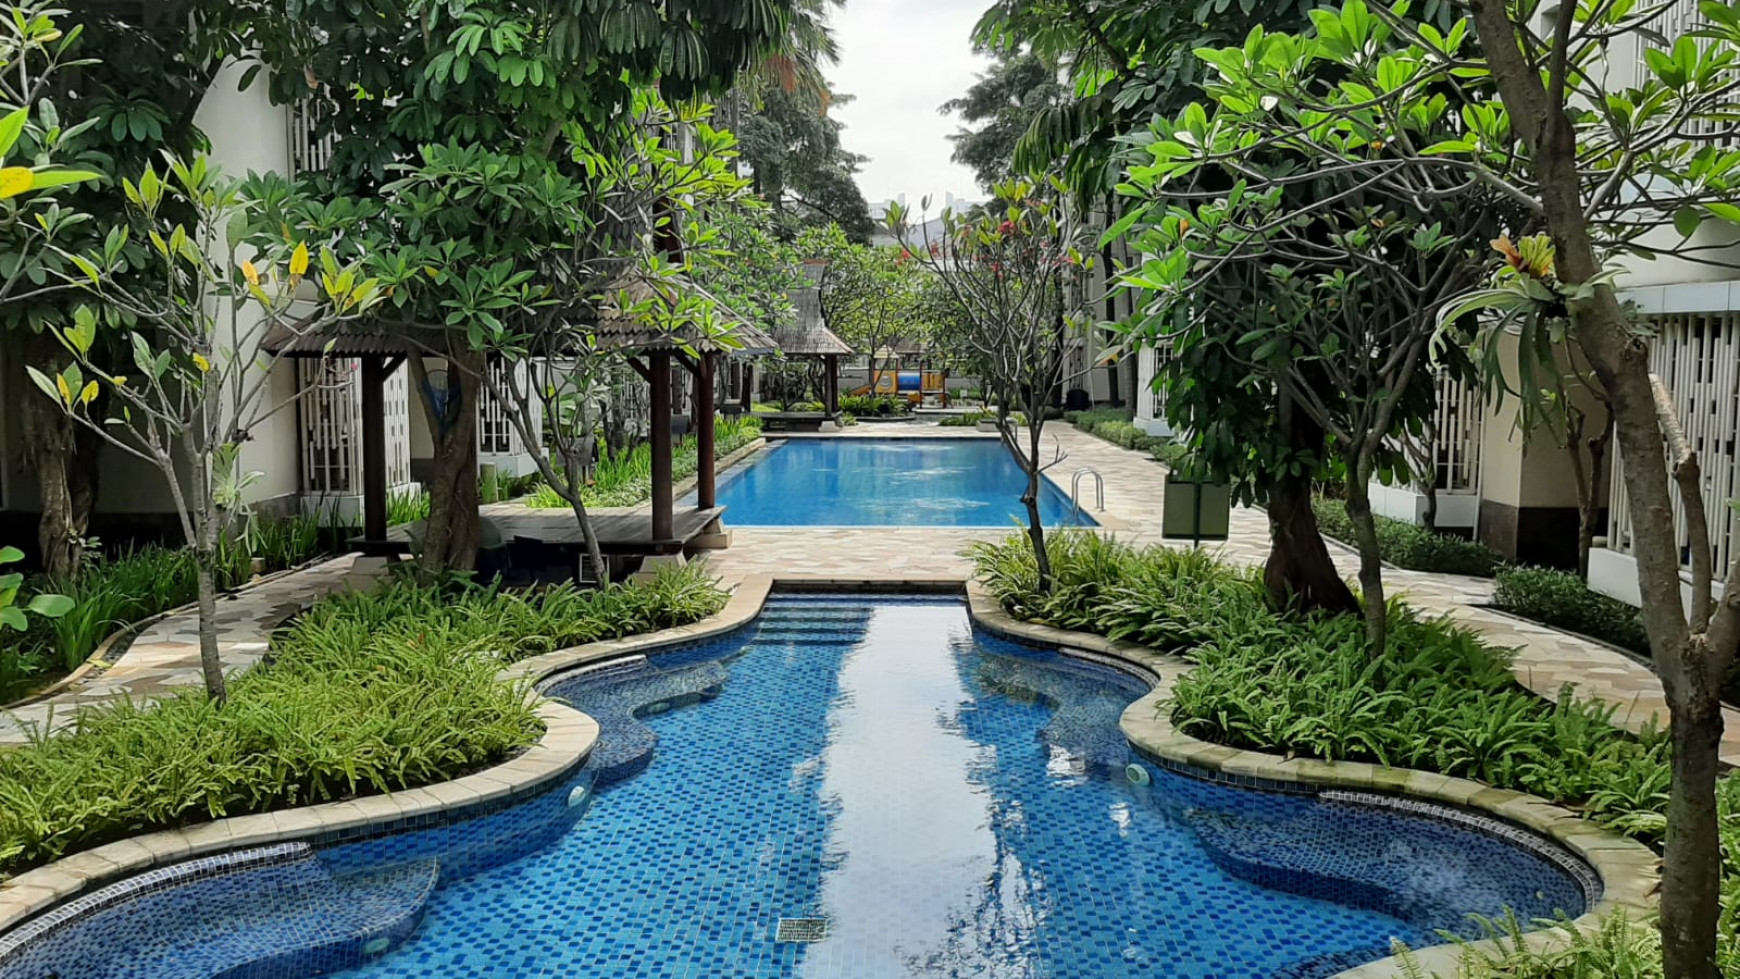 Dijual/disewakan 3 BR unit @ Puri Park Residence, Puri Kencana, Jakarta Barat